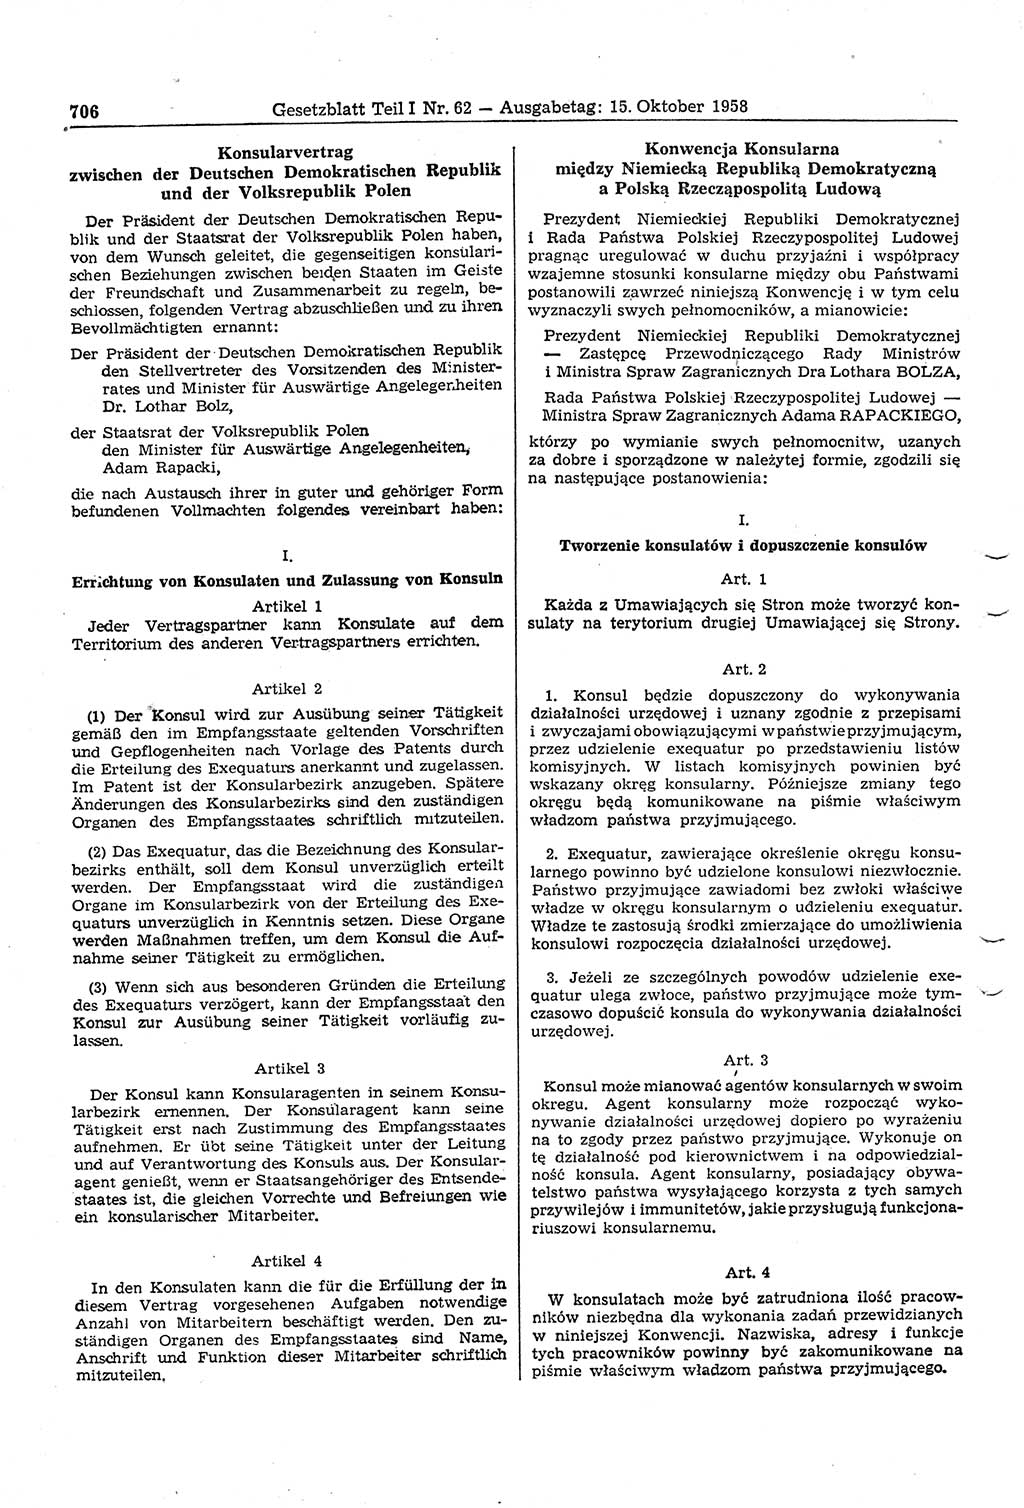 Gesetzblatt (GBl.) der Deutschen Demokratischen Republik (DDR) Teil Ⅰ 1958, Seite 706 (GBl. DDR Ⅰ 1958, S. 706)